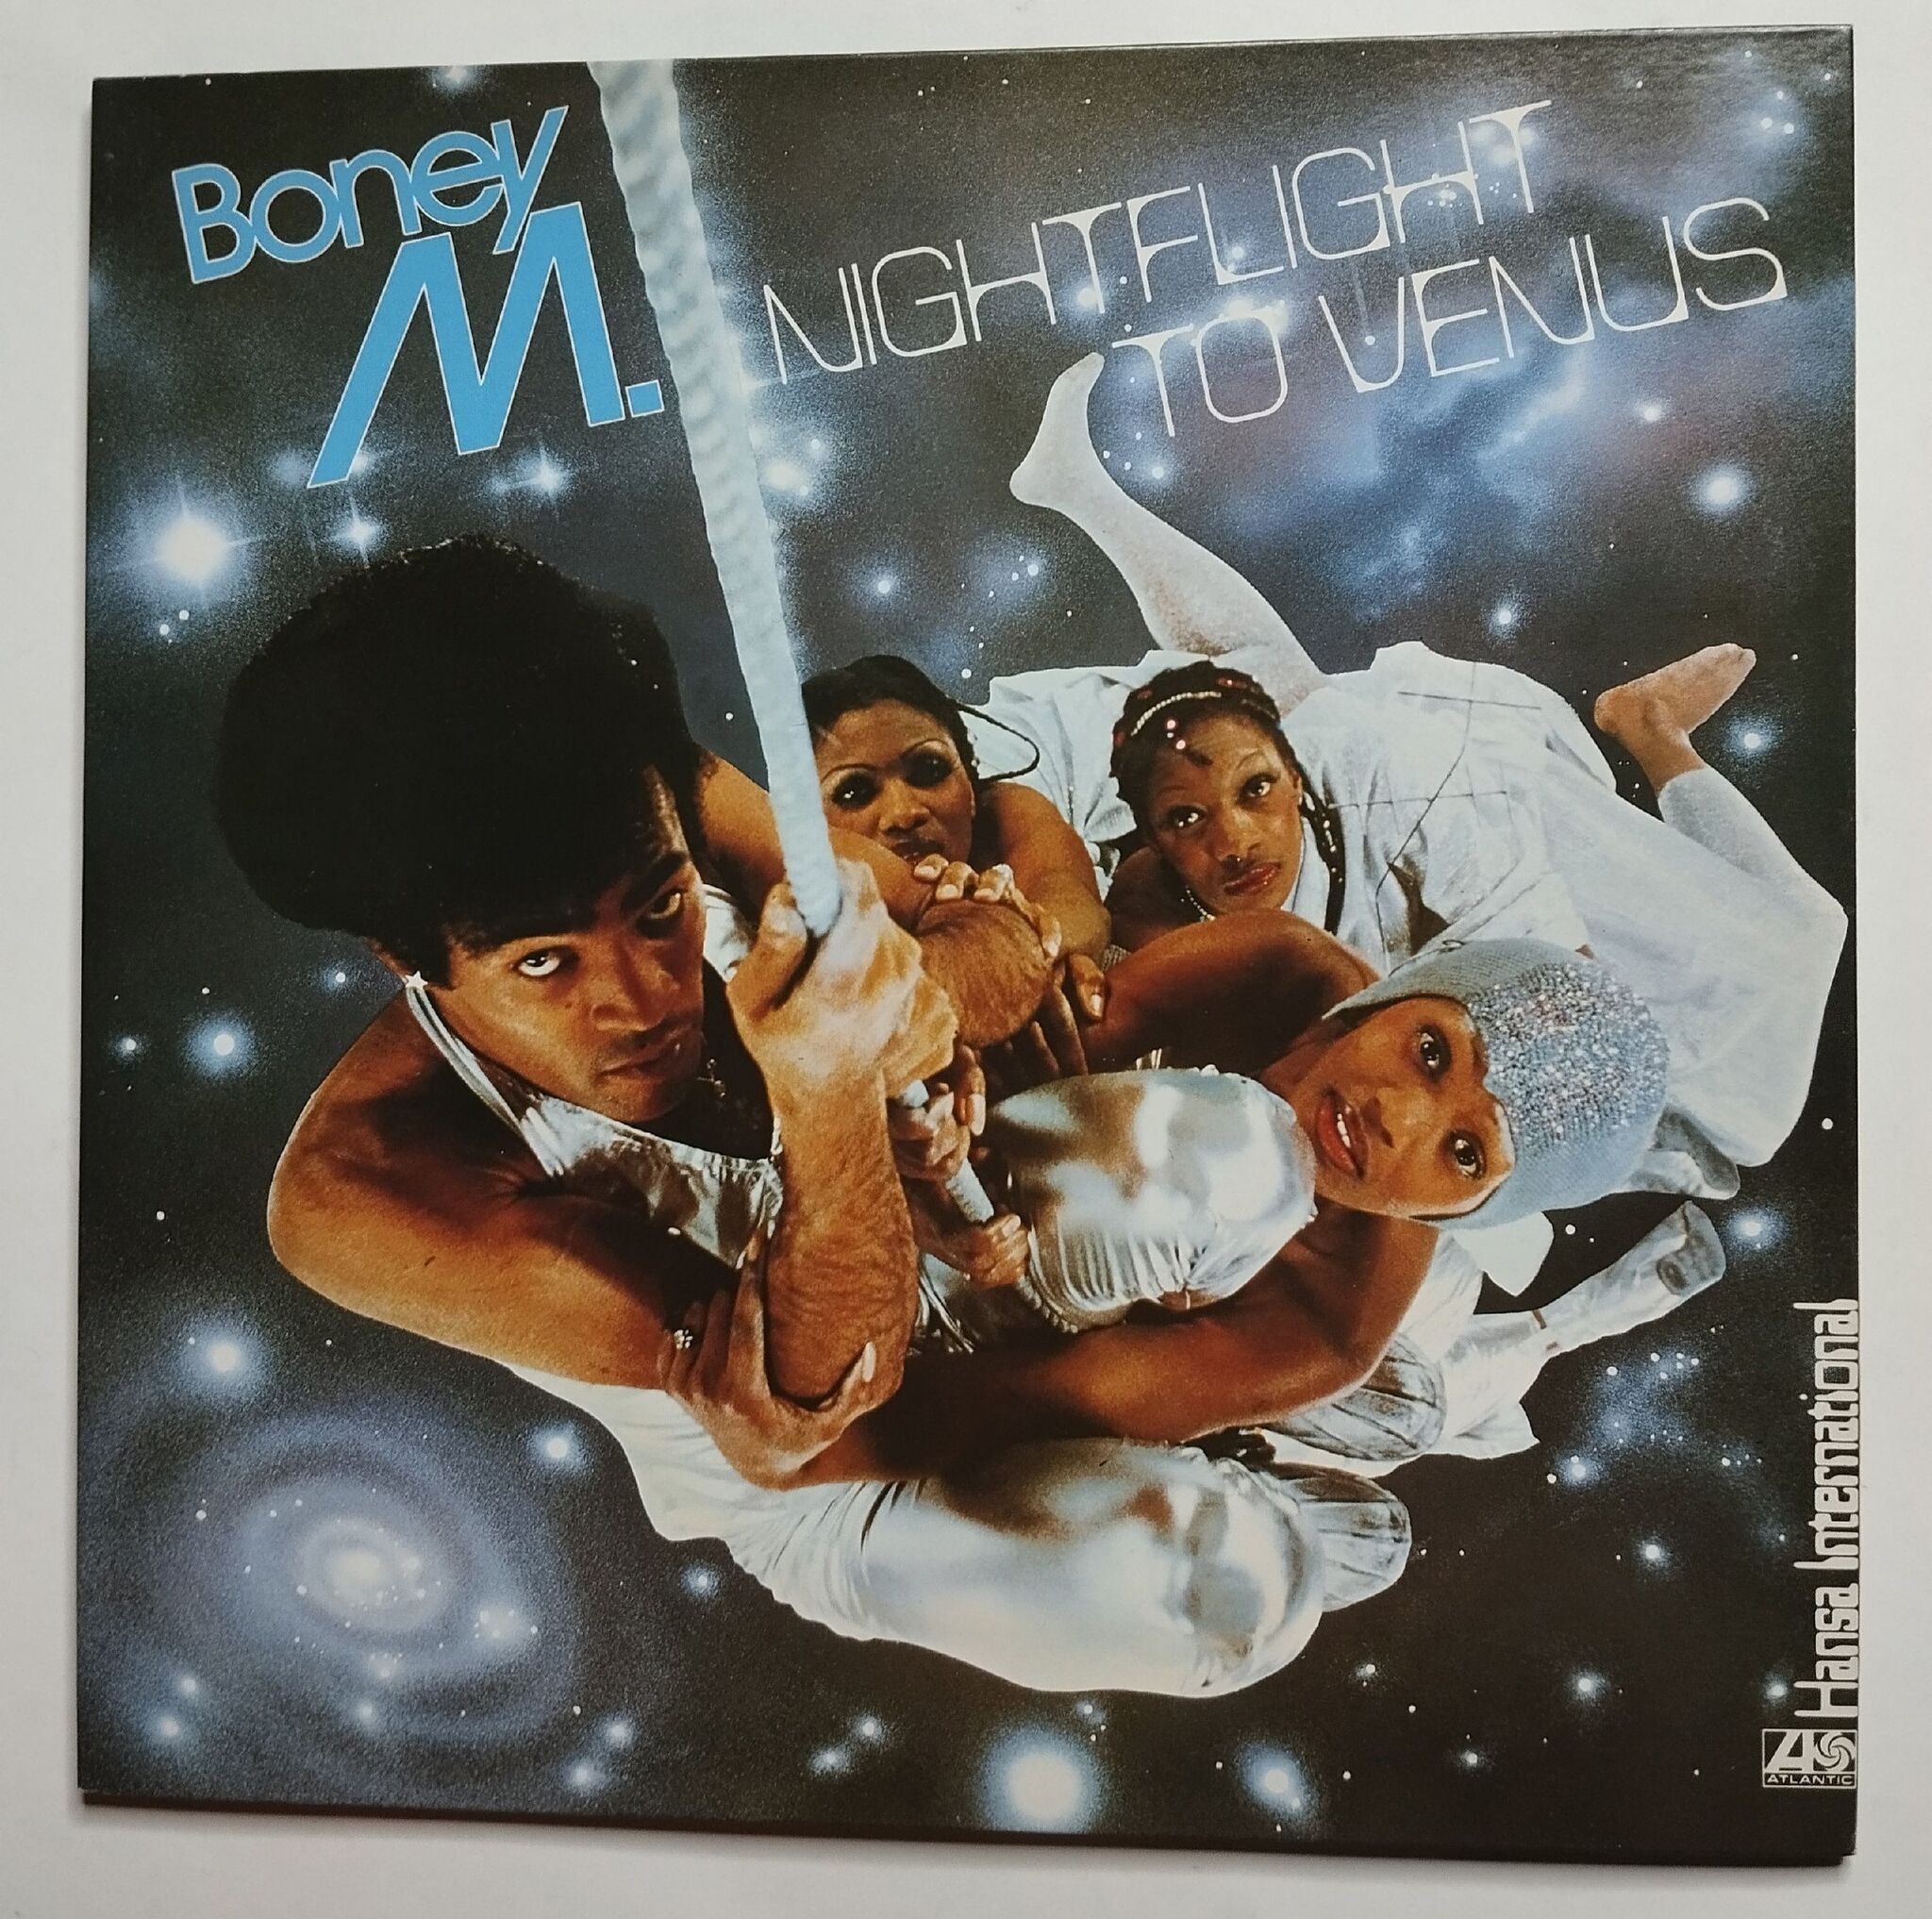 Группа Boney m. 1978. 1978 - Nightflight to Venus. Boney m Nightflight to Venus 1978. Бони м 1978.